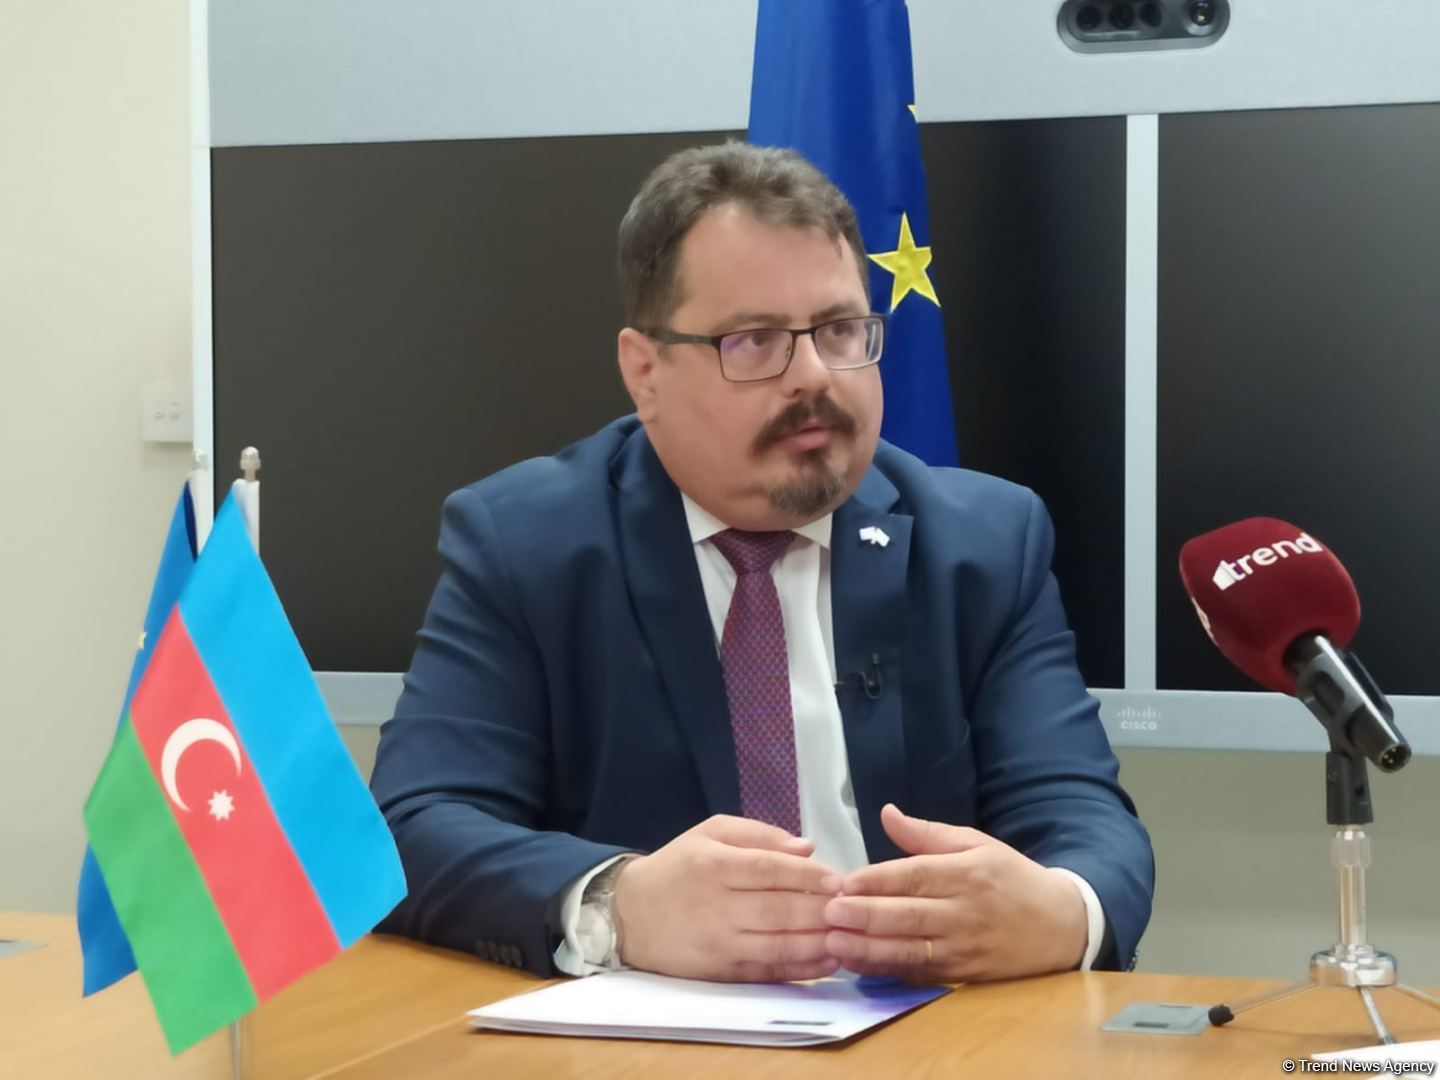 ЕС поддерживает субъекты предпринимательства в Азербайджане - Петер Михалко